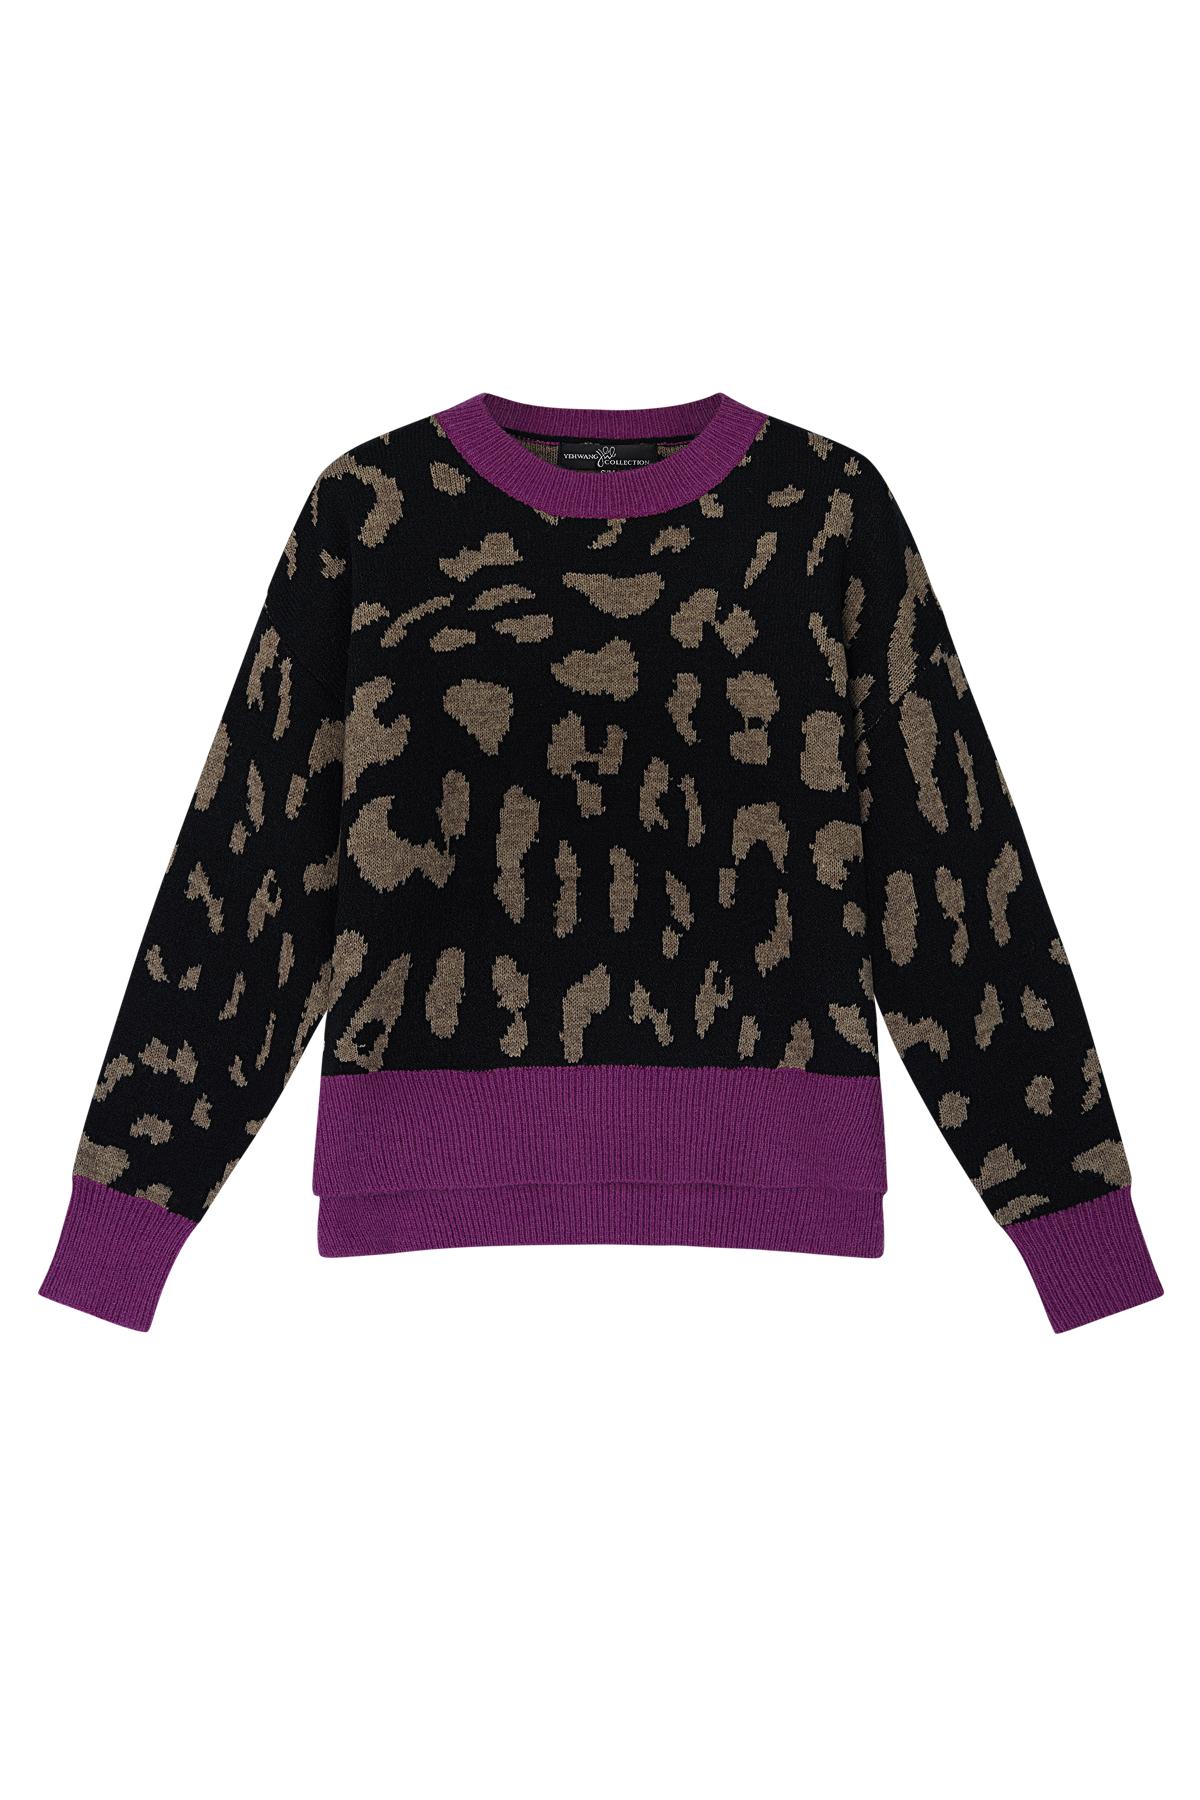 Pullover mit Leopardenmuster und lila Kragen Schwarz &amp; Beige S/M